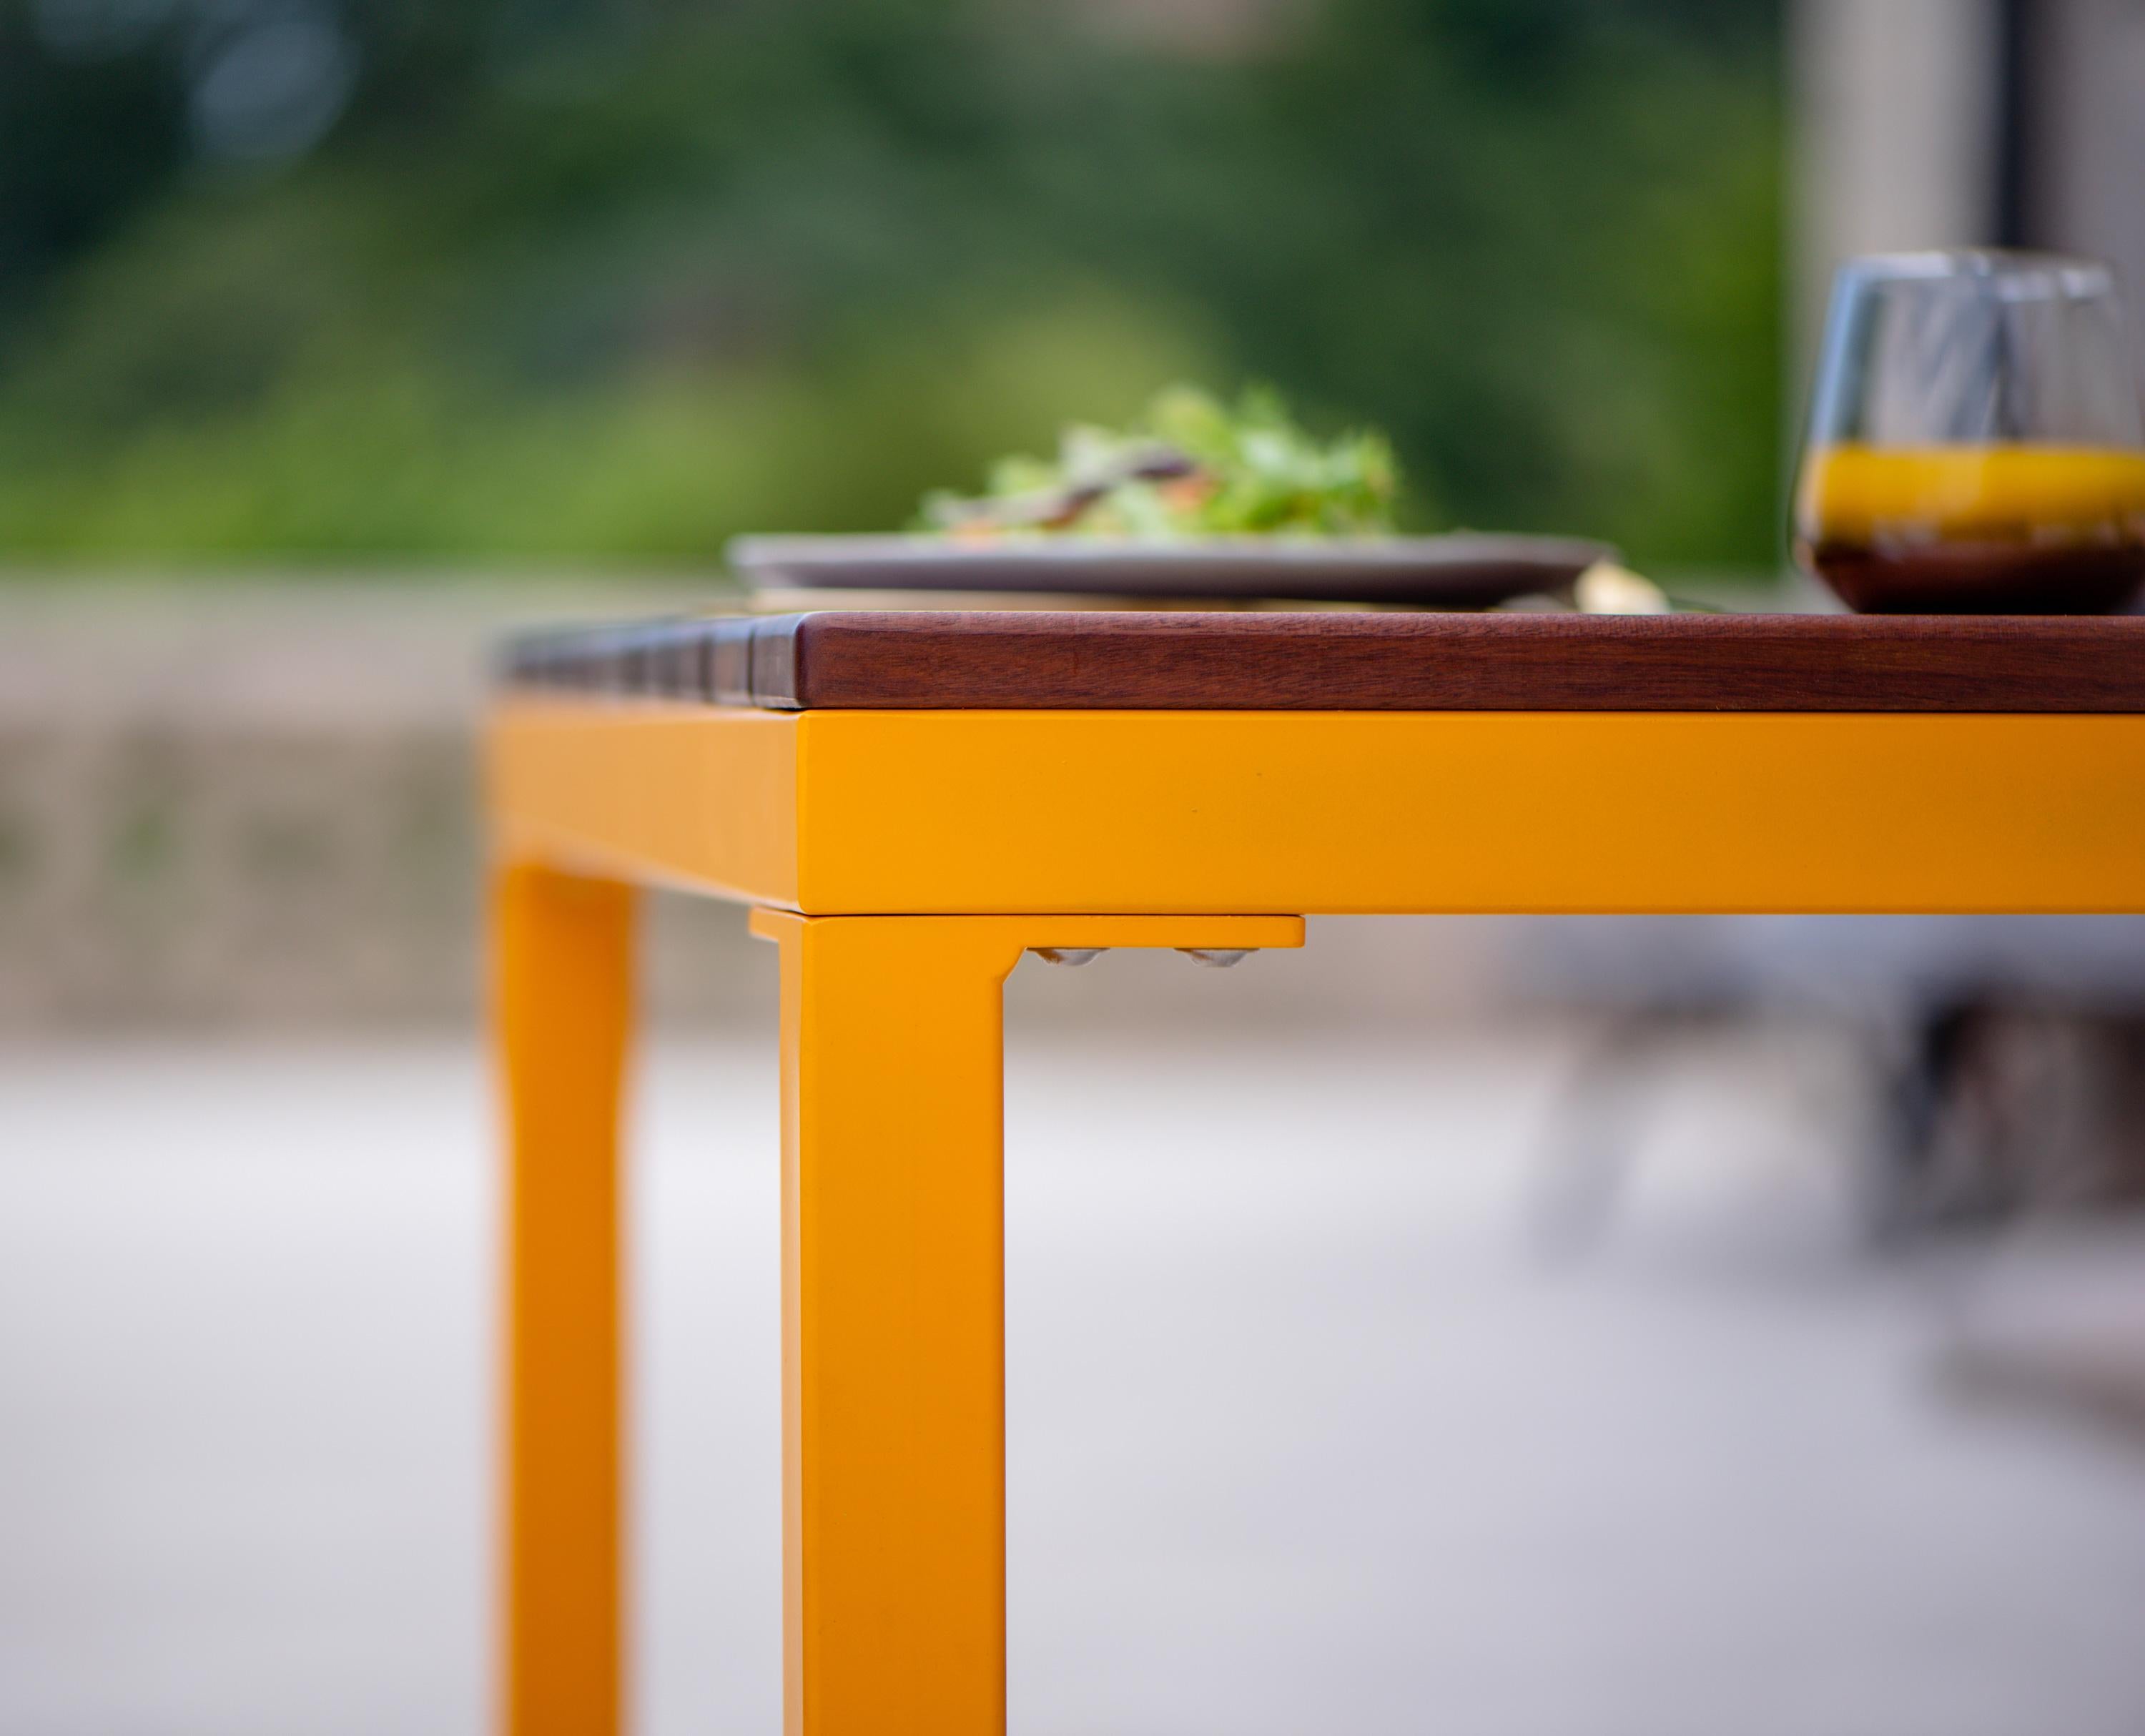 BICAtable Square XL ist ein nachhaltiger Stahltisch für den Außenbereich, der aus recyceltem und wiederverwertbarem Stahl hergestellt und mit unserer erstklassigen Auswahl an Pulverbeschichtungsfarben, in diesem Fall in einem leuchtenden Gelb,